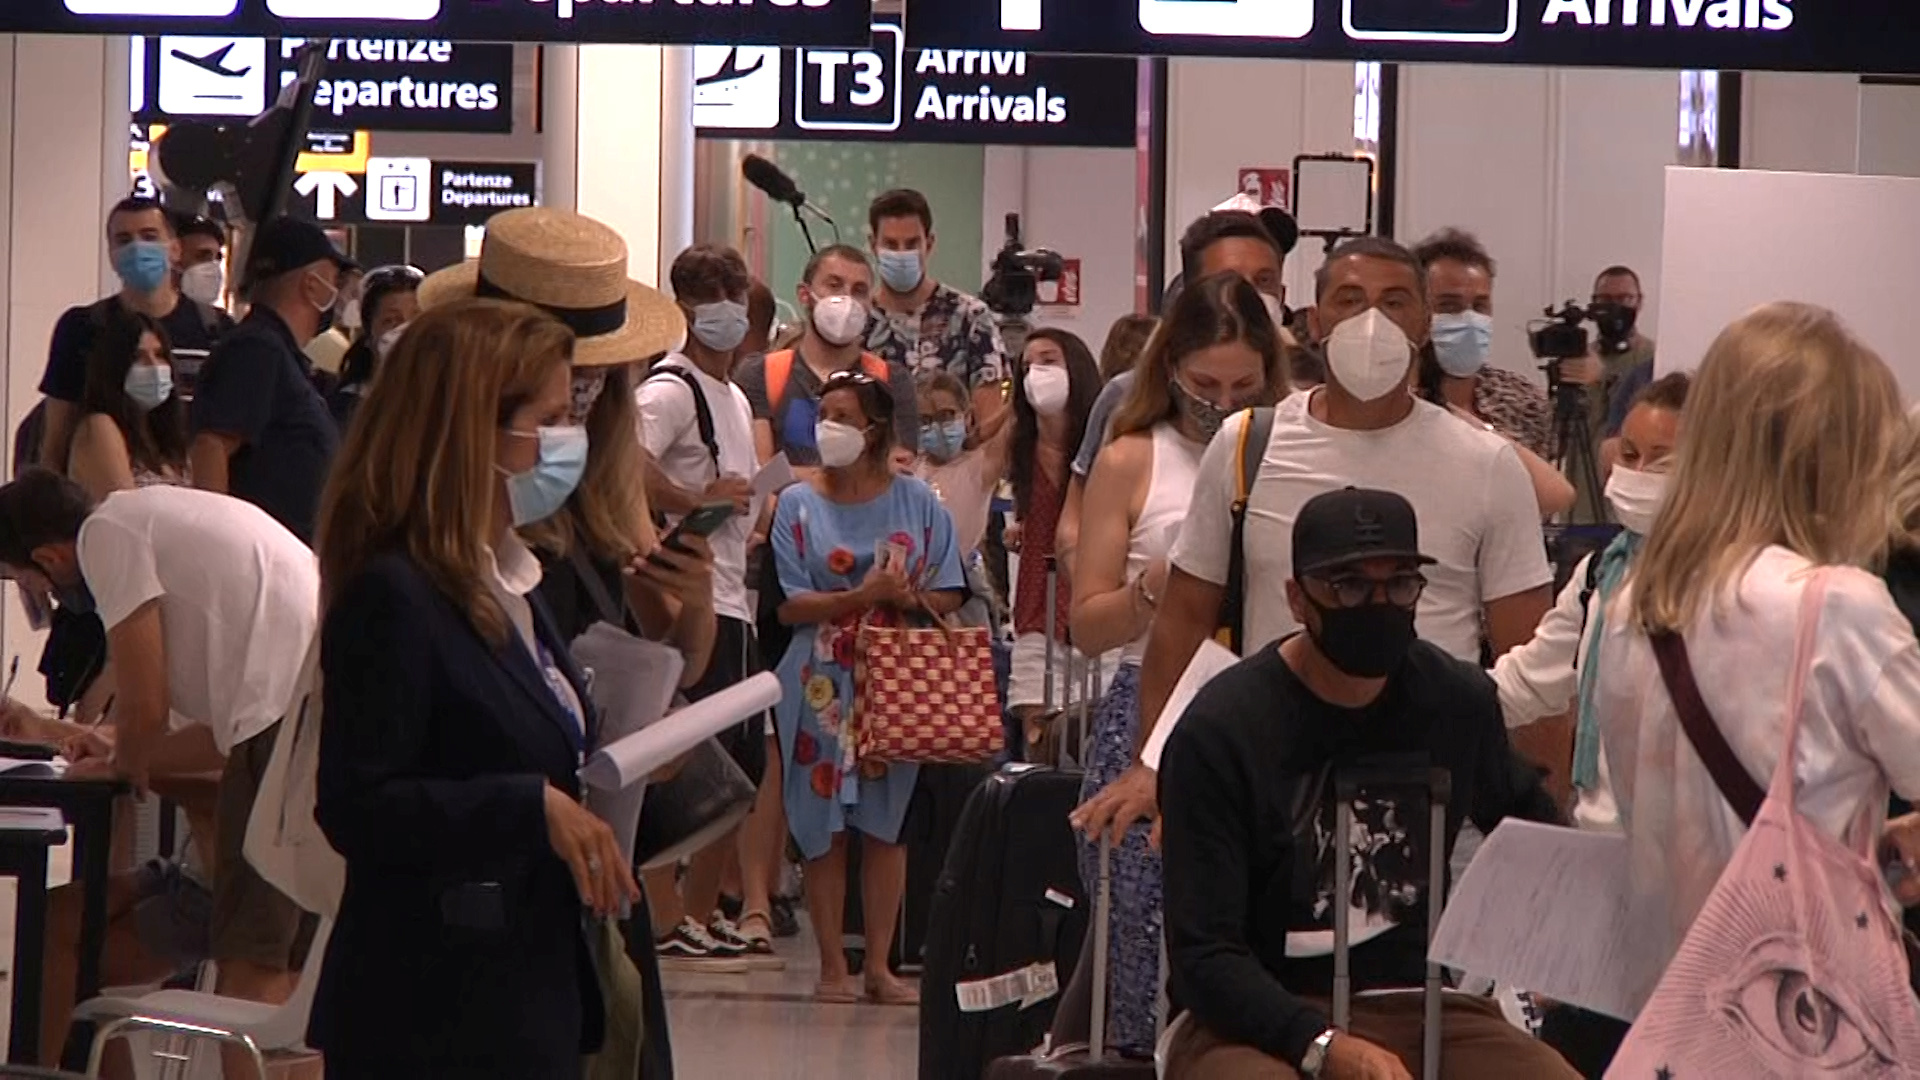 Colas antes de someterse al test de coronavirus en el aeropuerto de Roma. (Aeroporti di Roma via REUTERS)